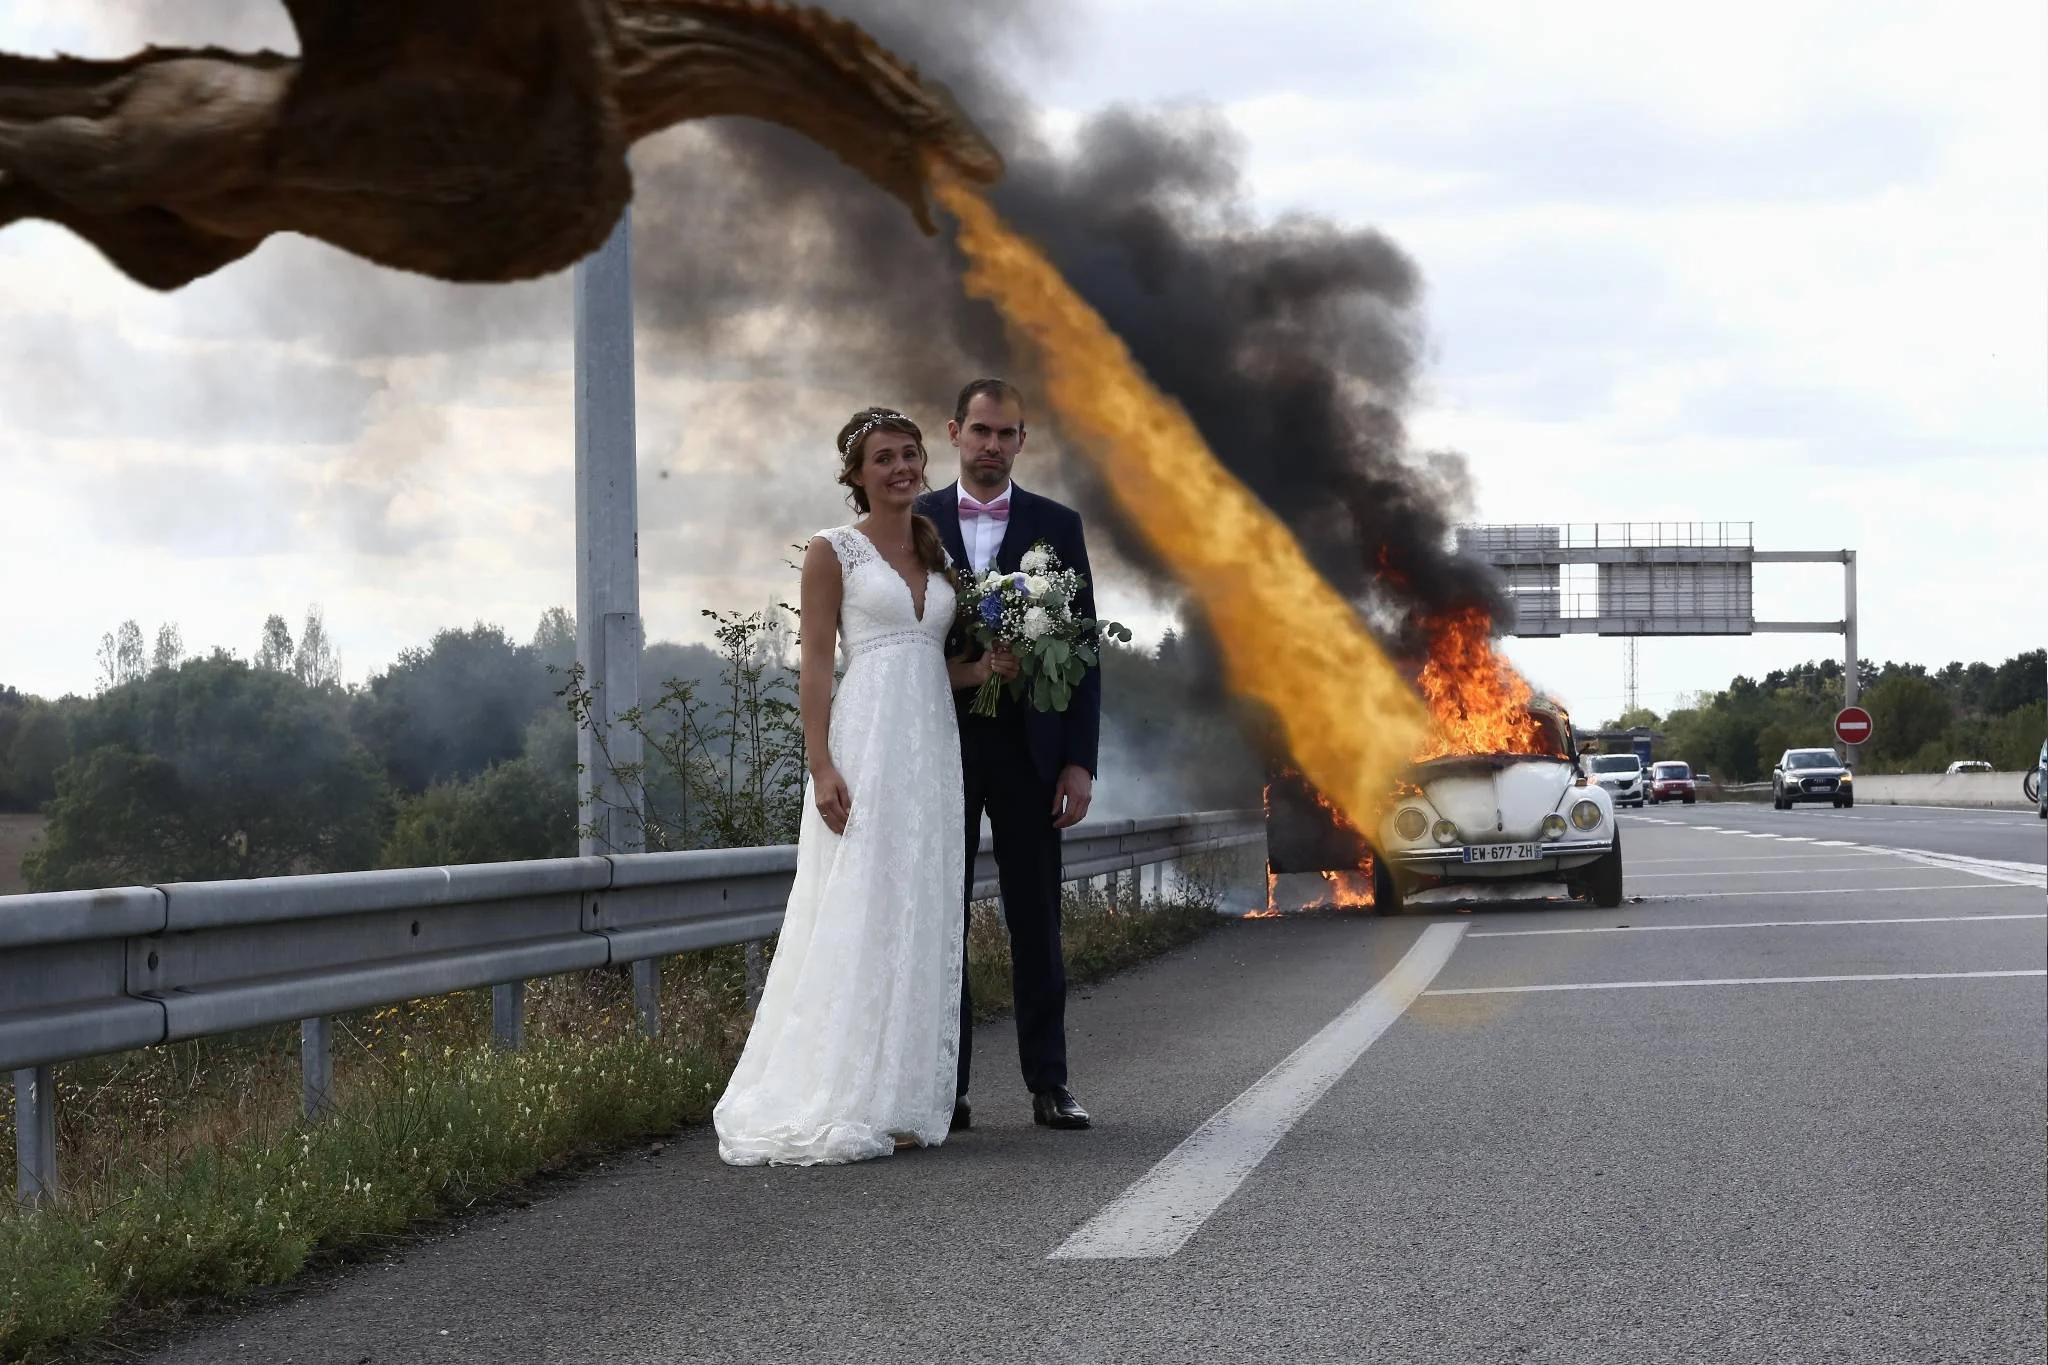 Молодята зробили весільне фото на фоні палаючого авто і стали жертвами фотошопу - фото 452767